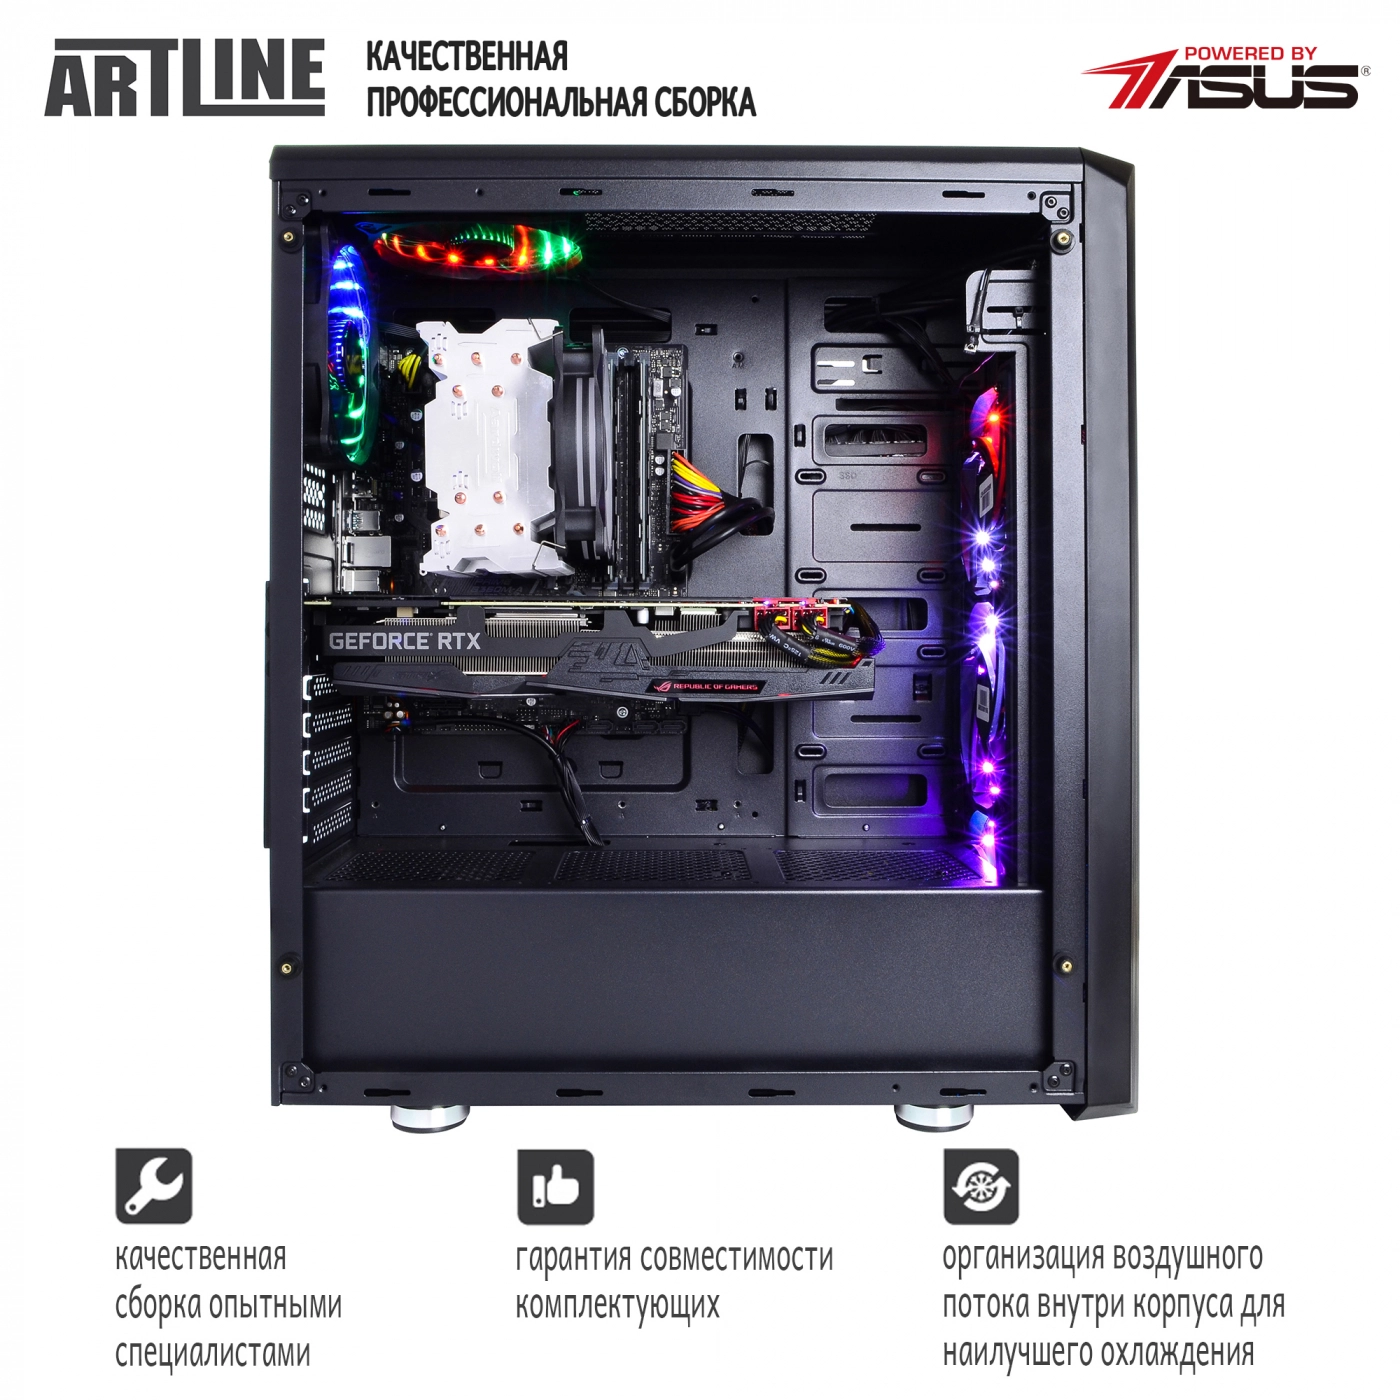 Купить Компьютер ARTLINE Gaming X95v16 - фото 7